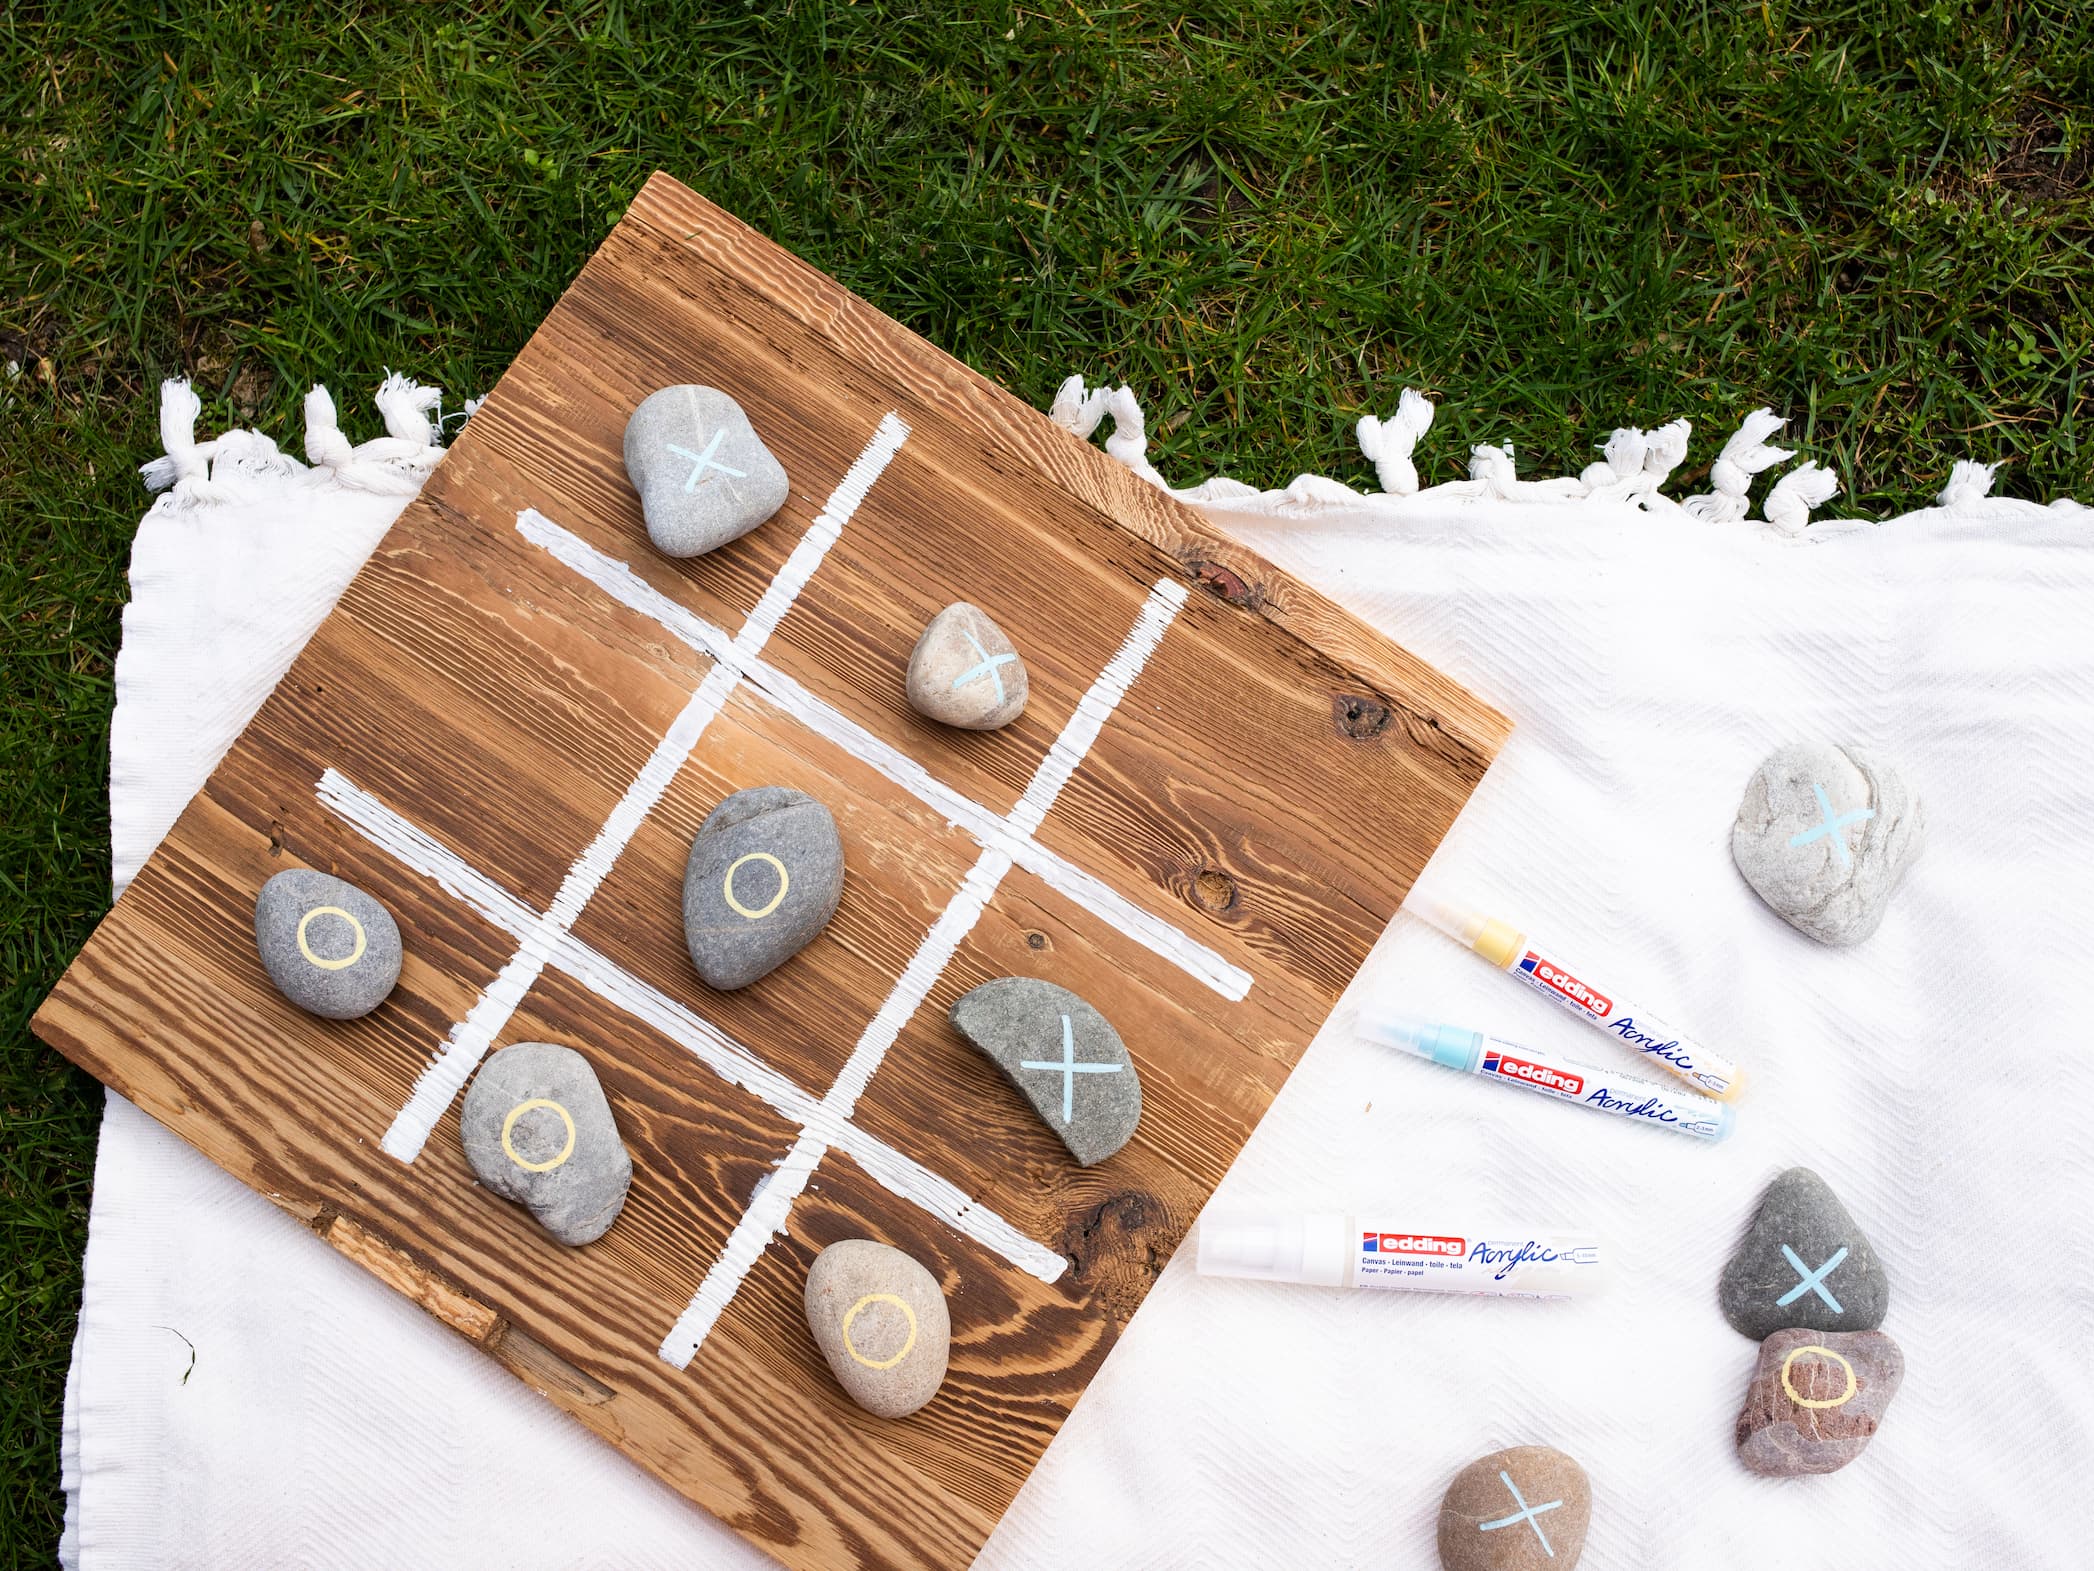 Ein handgefertigtes Tic-Tac-Toe-Brettspiel aus Holz und Steinen, ausgelegt auf einer weißen Decke über Gras, mit Spielmarkierungen, die mit edding 5000 Acrylmarker breit auf die Steine gemalt wurden.